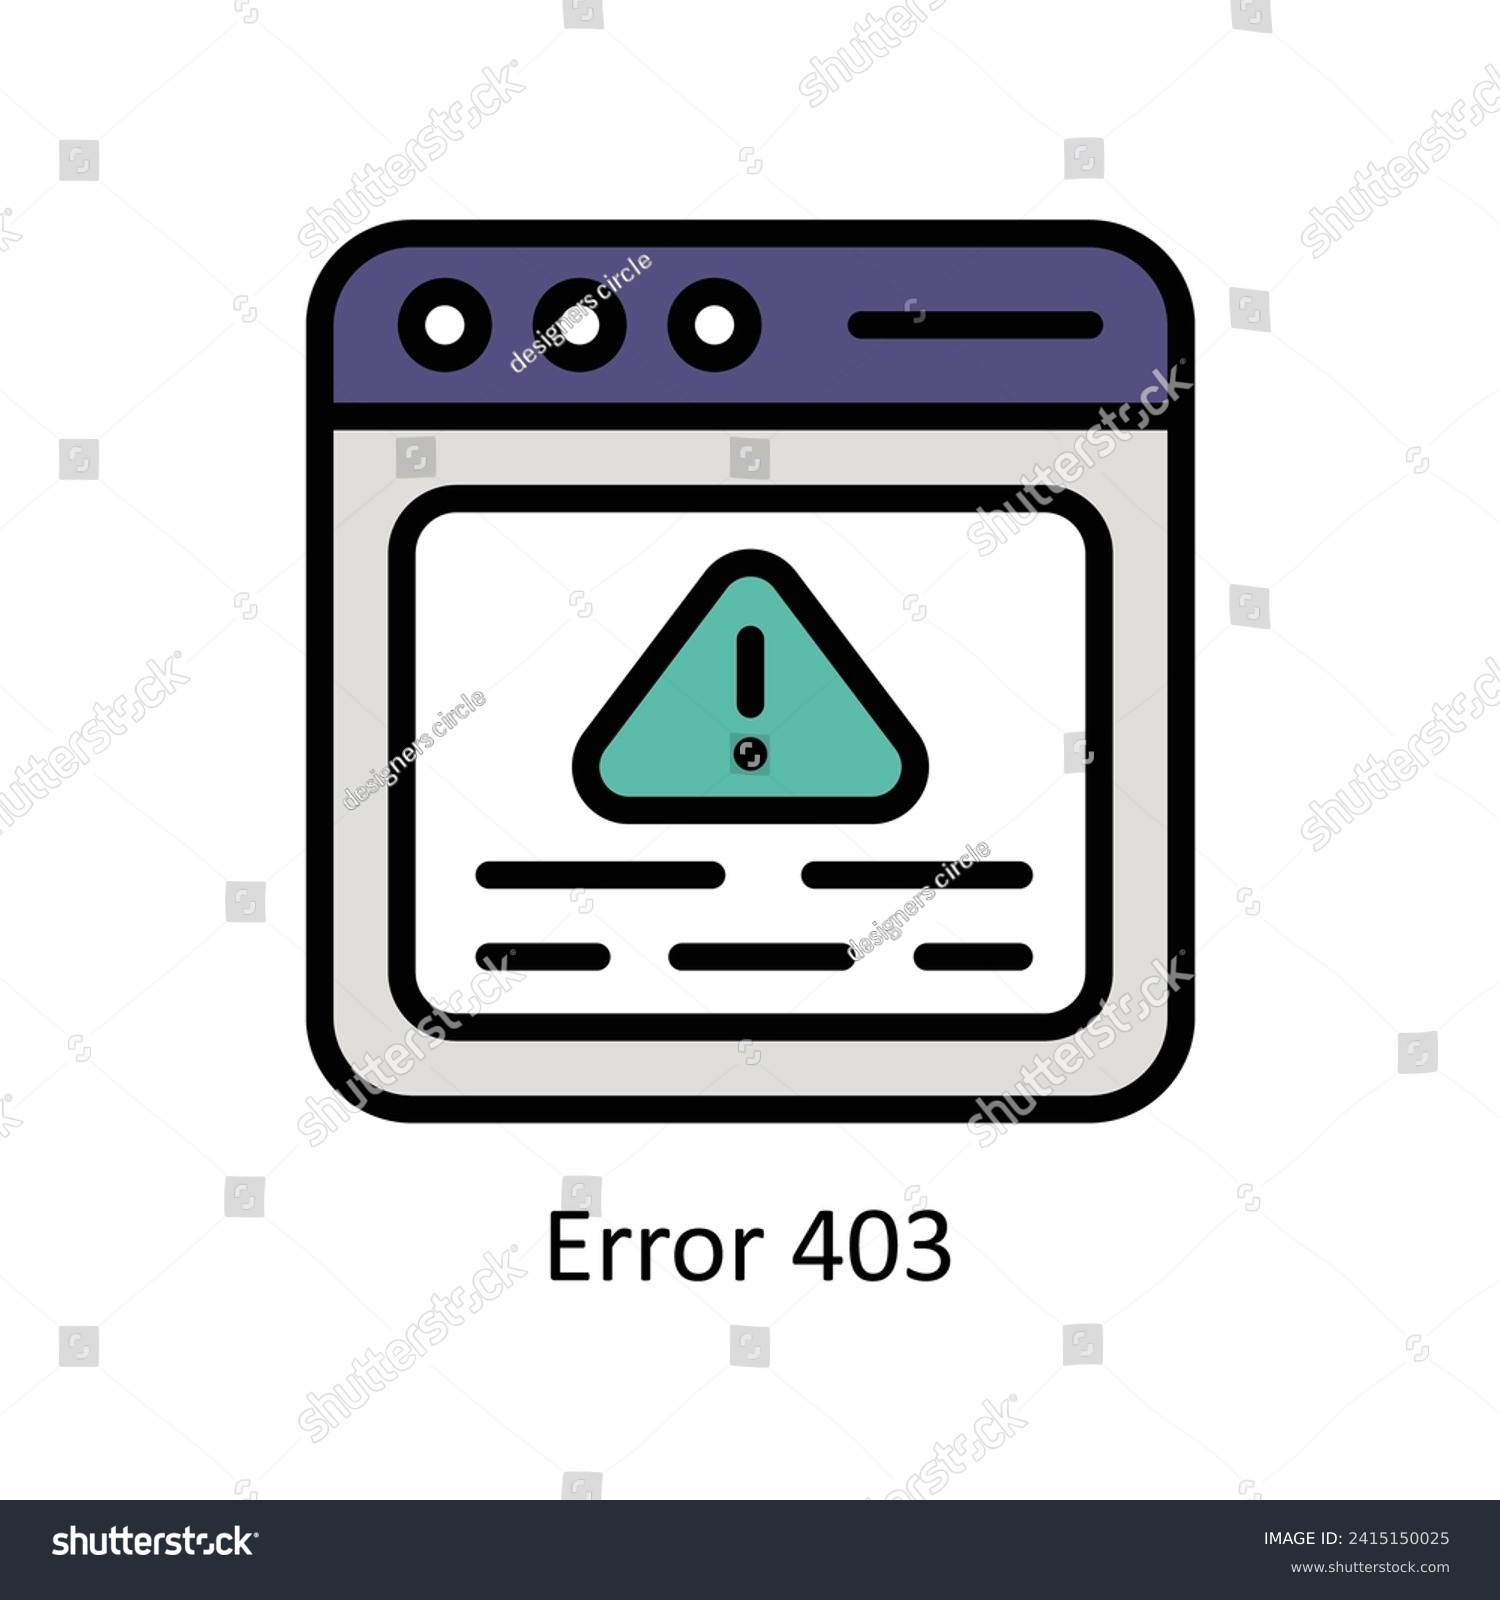 SVG of Error 403  vector Filled outline icon style illustration. EPS 10 File svg